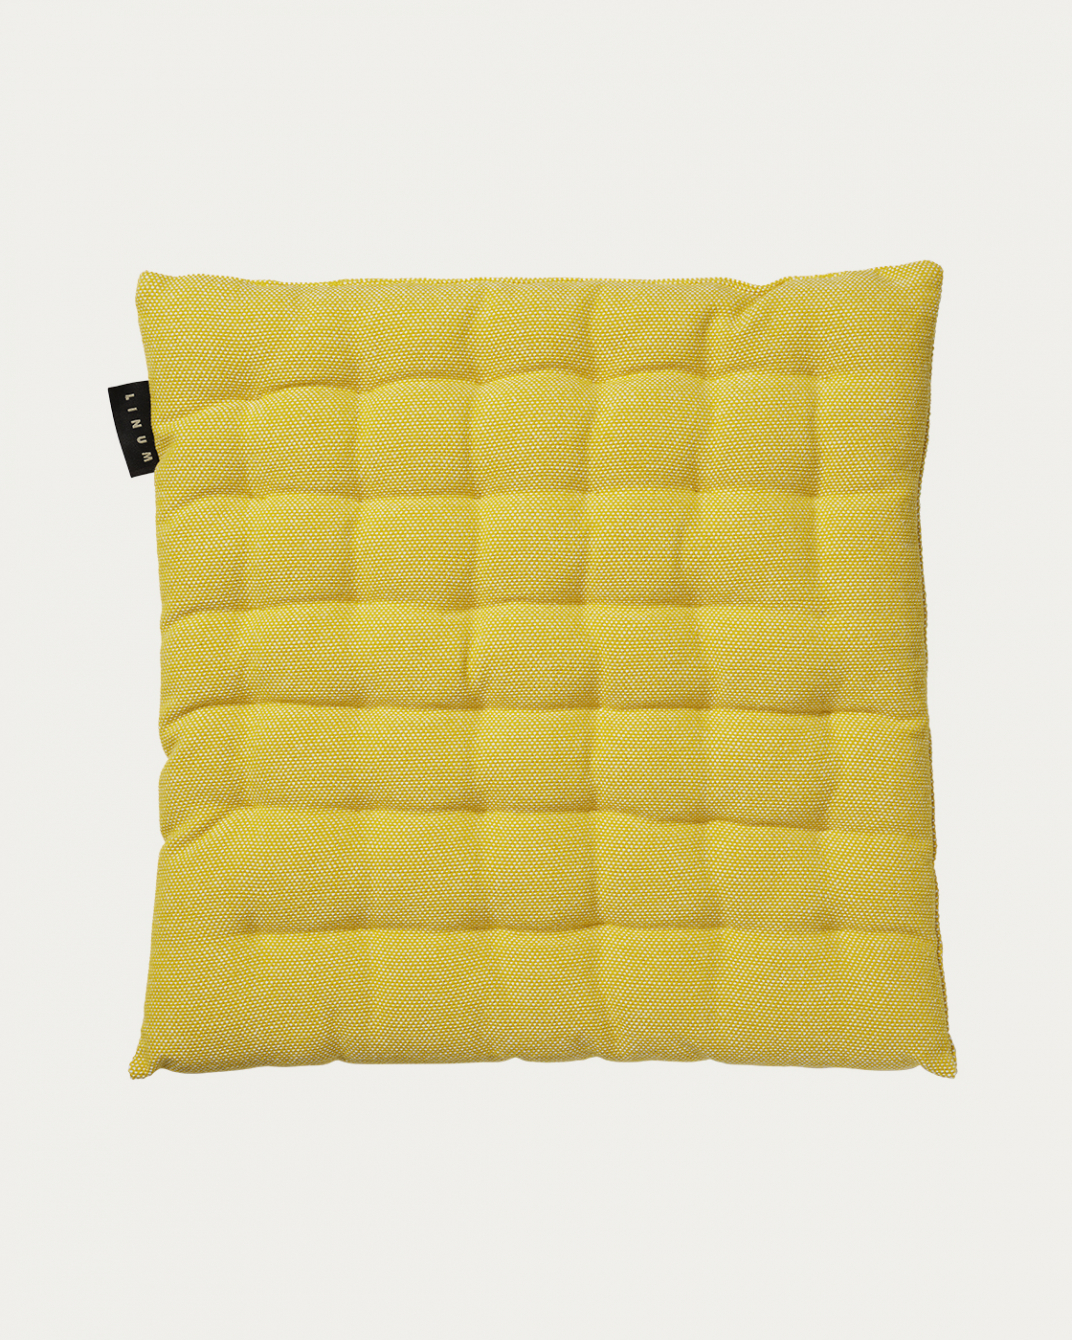 LINUM PEPPER Elegant Seat Cushion 40x40 cm, 100% Cotton, Machine